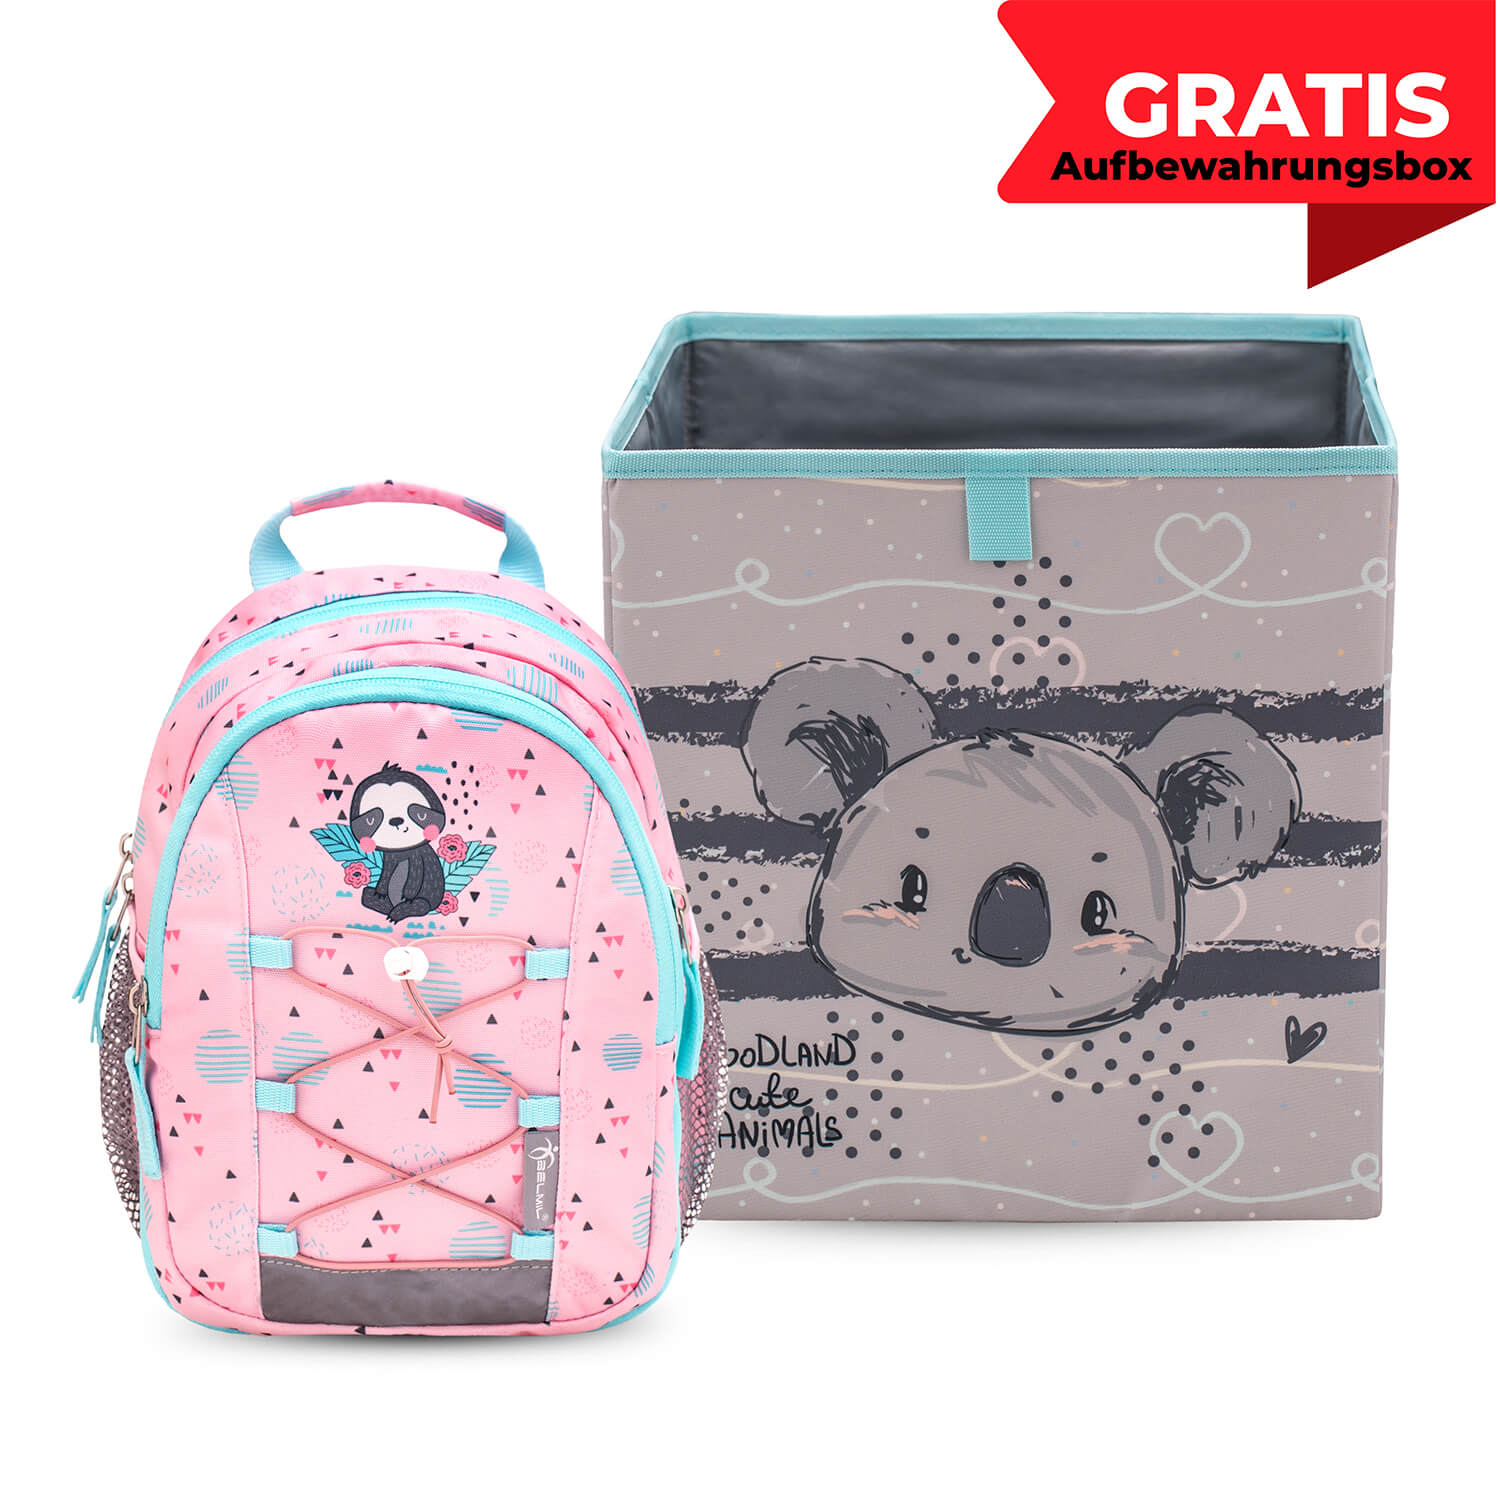 Mini Kiddy Little Sloth Kindergarten Bag mit GRATIS Storage box